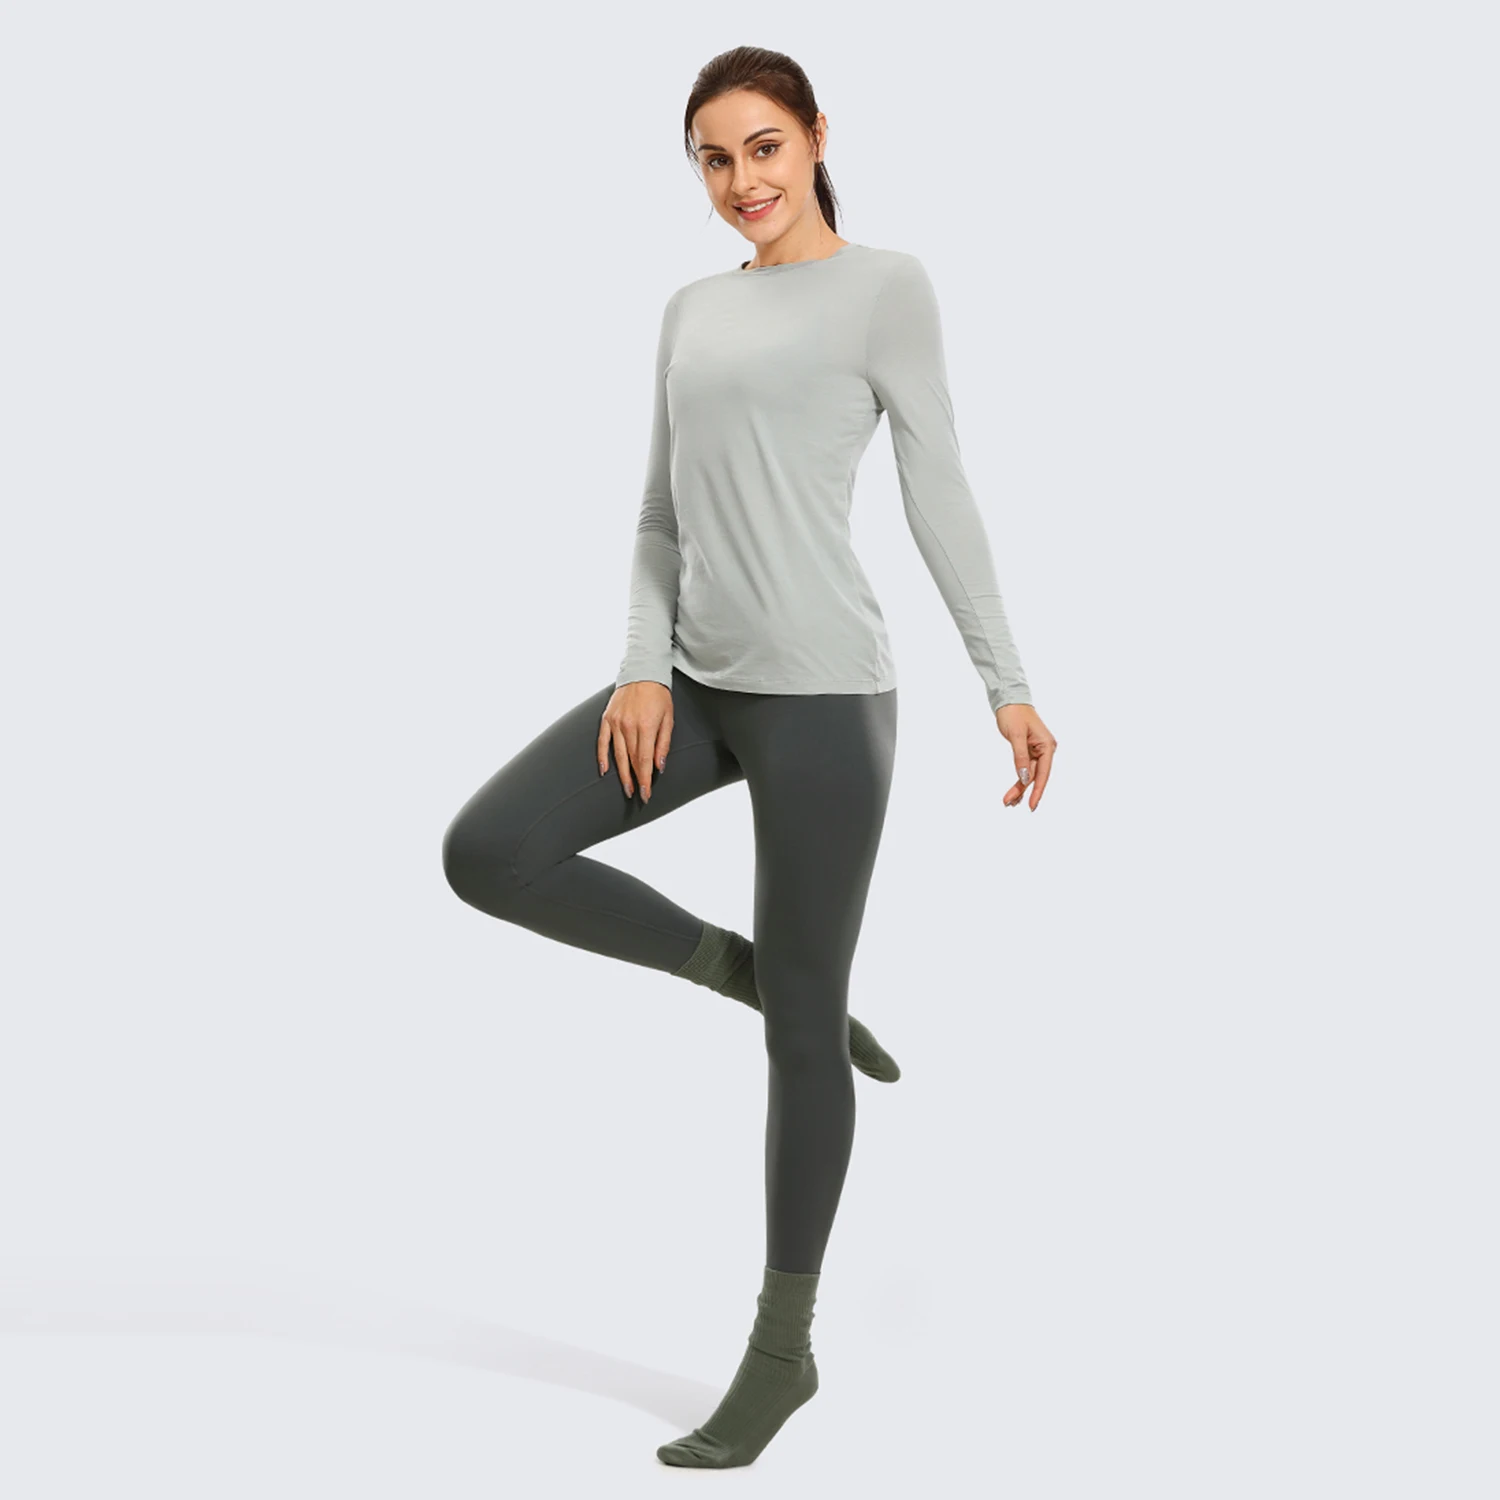  CRZ YOGA Light-Fleece Warm Leggings for Women 28